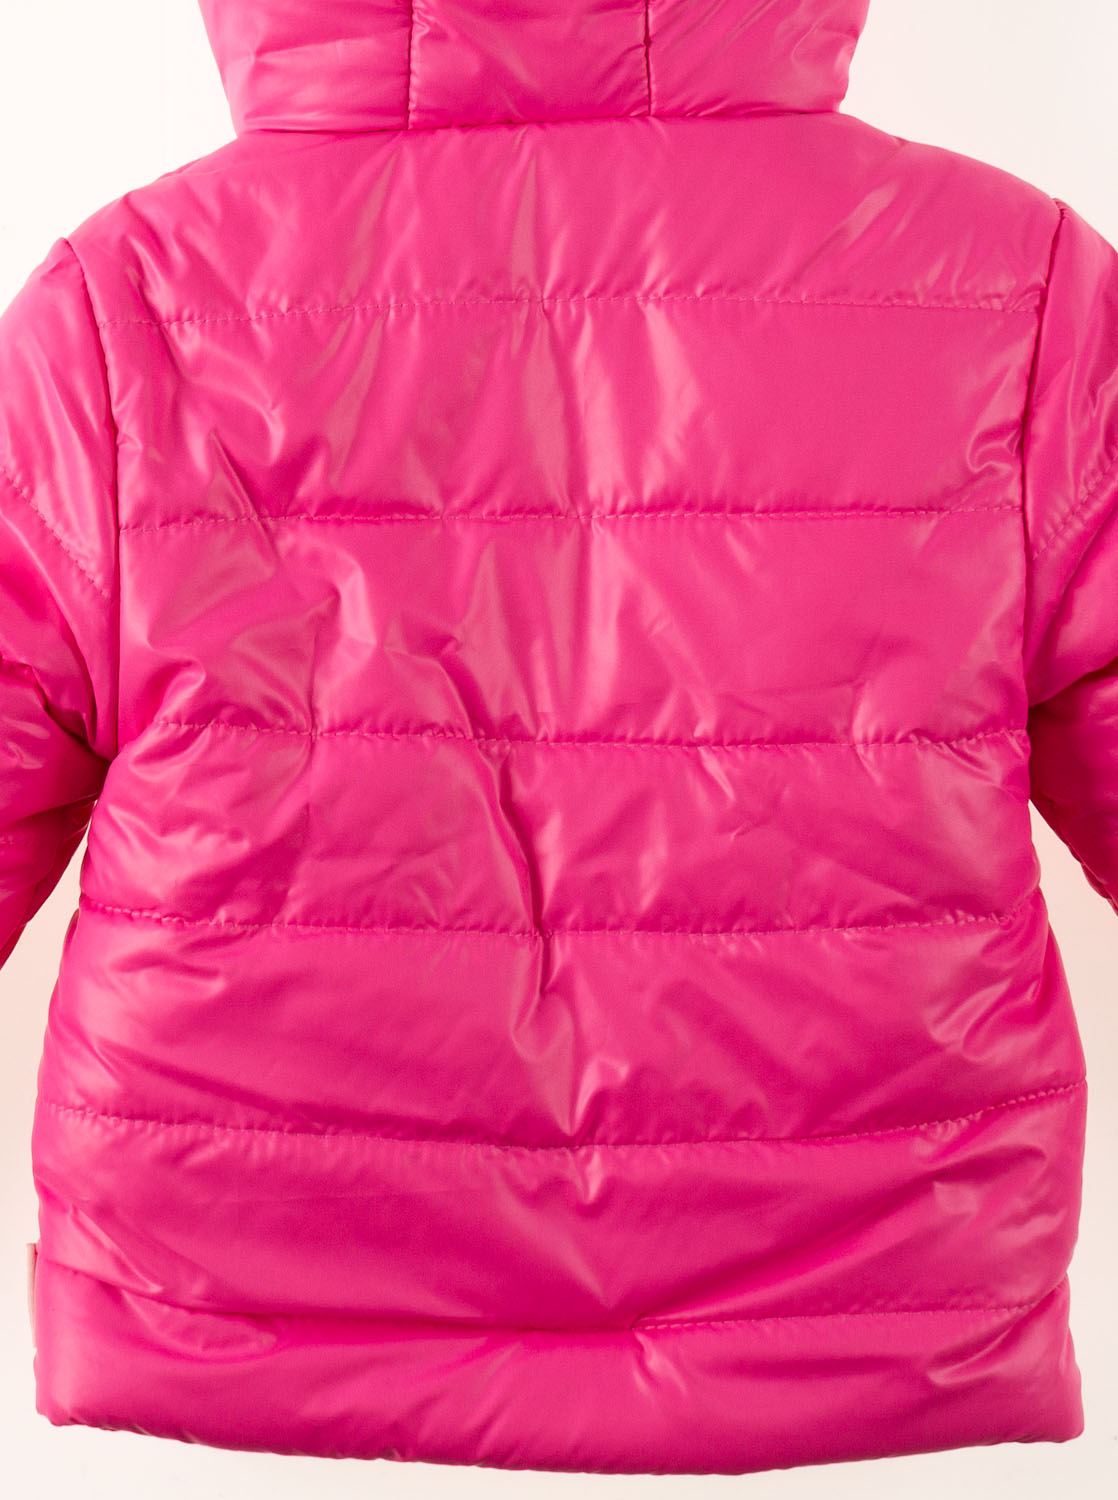 Куртка зимова для дівчинки Одягайко рожева 2829О - світлина